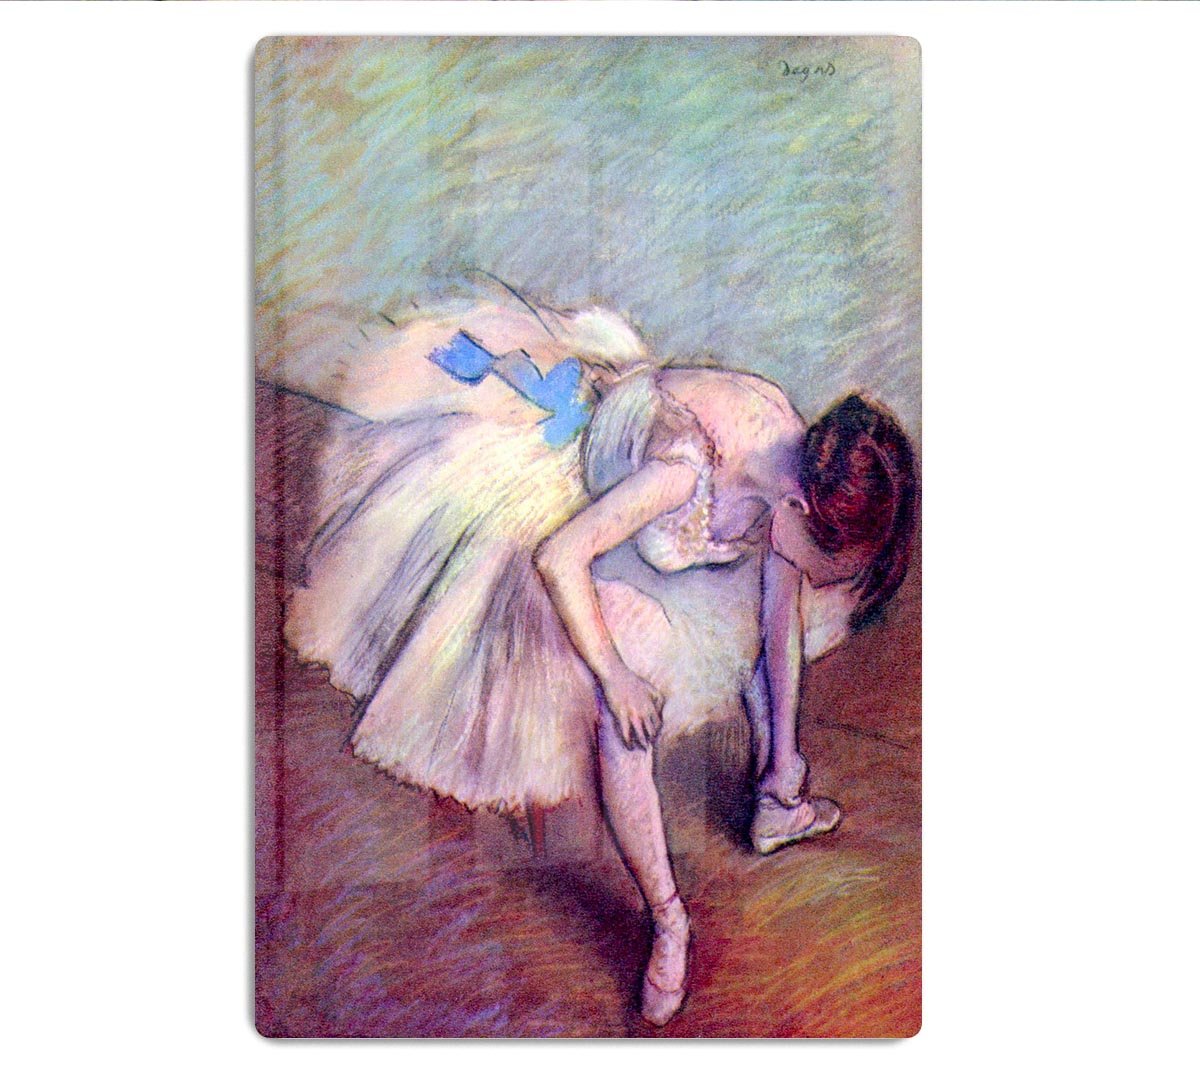 Dancer 2 by Degas HD Metal Print - Canvas Art Rocks - 1